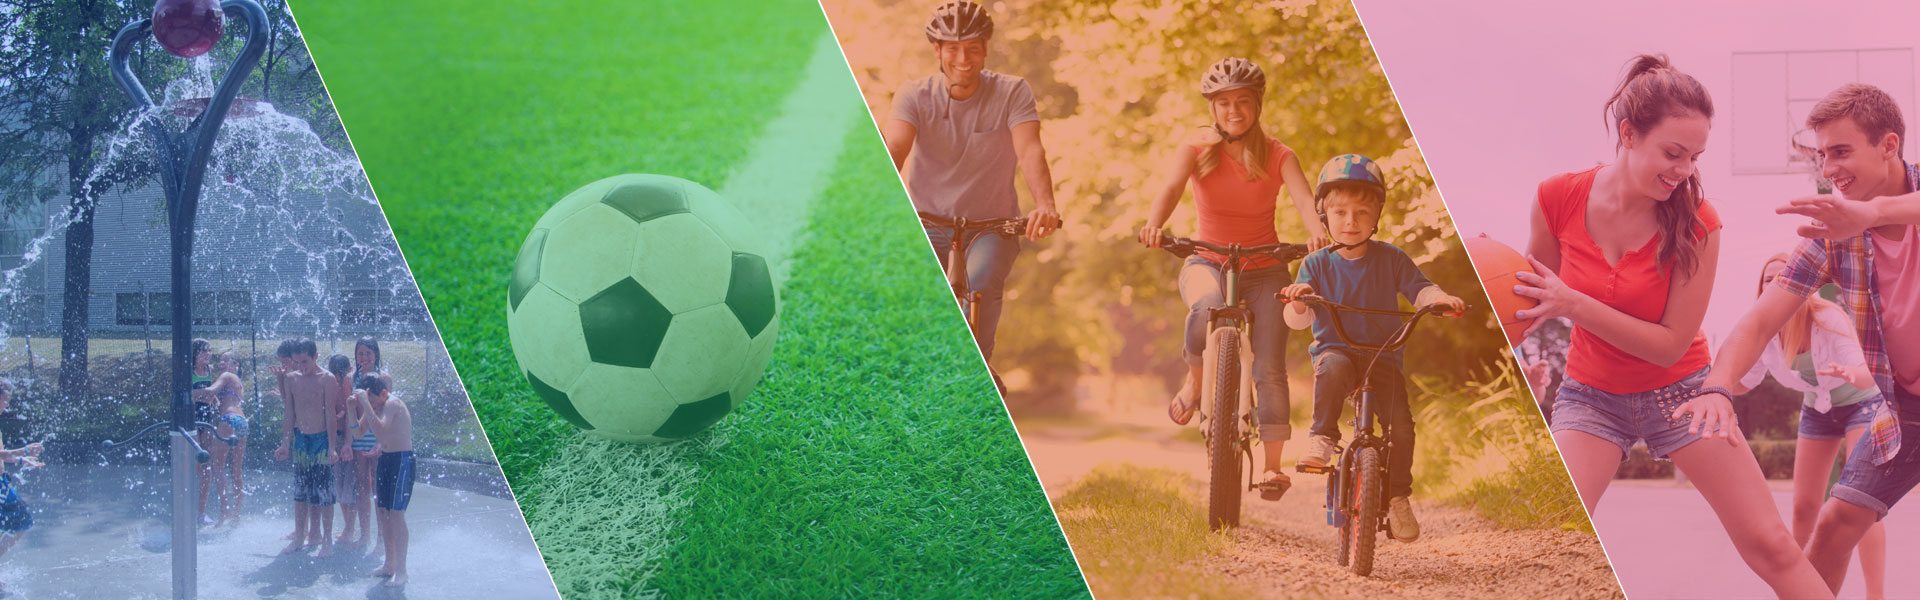 Montage photo de diverses activités libres : jeux d'eau, soccer, vélo et basketball